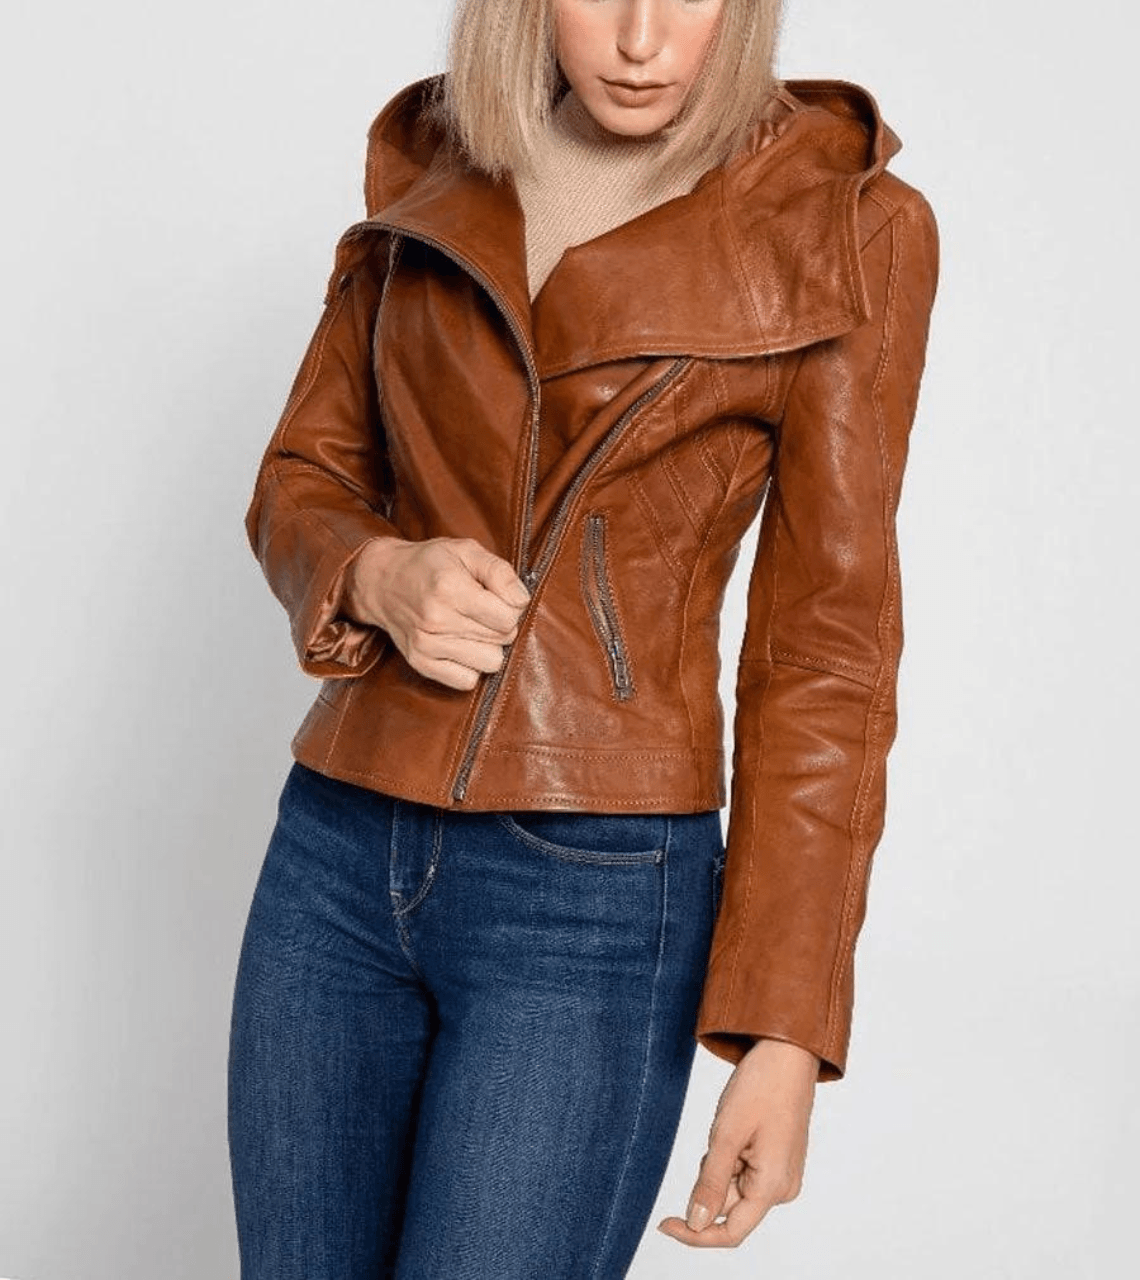 Women’s Tan Brown Leather Hooded Biker Jacket